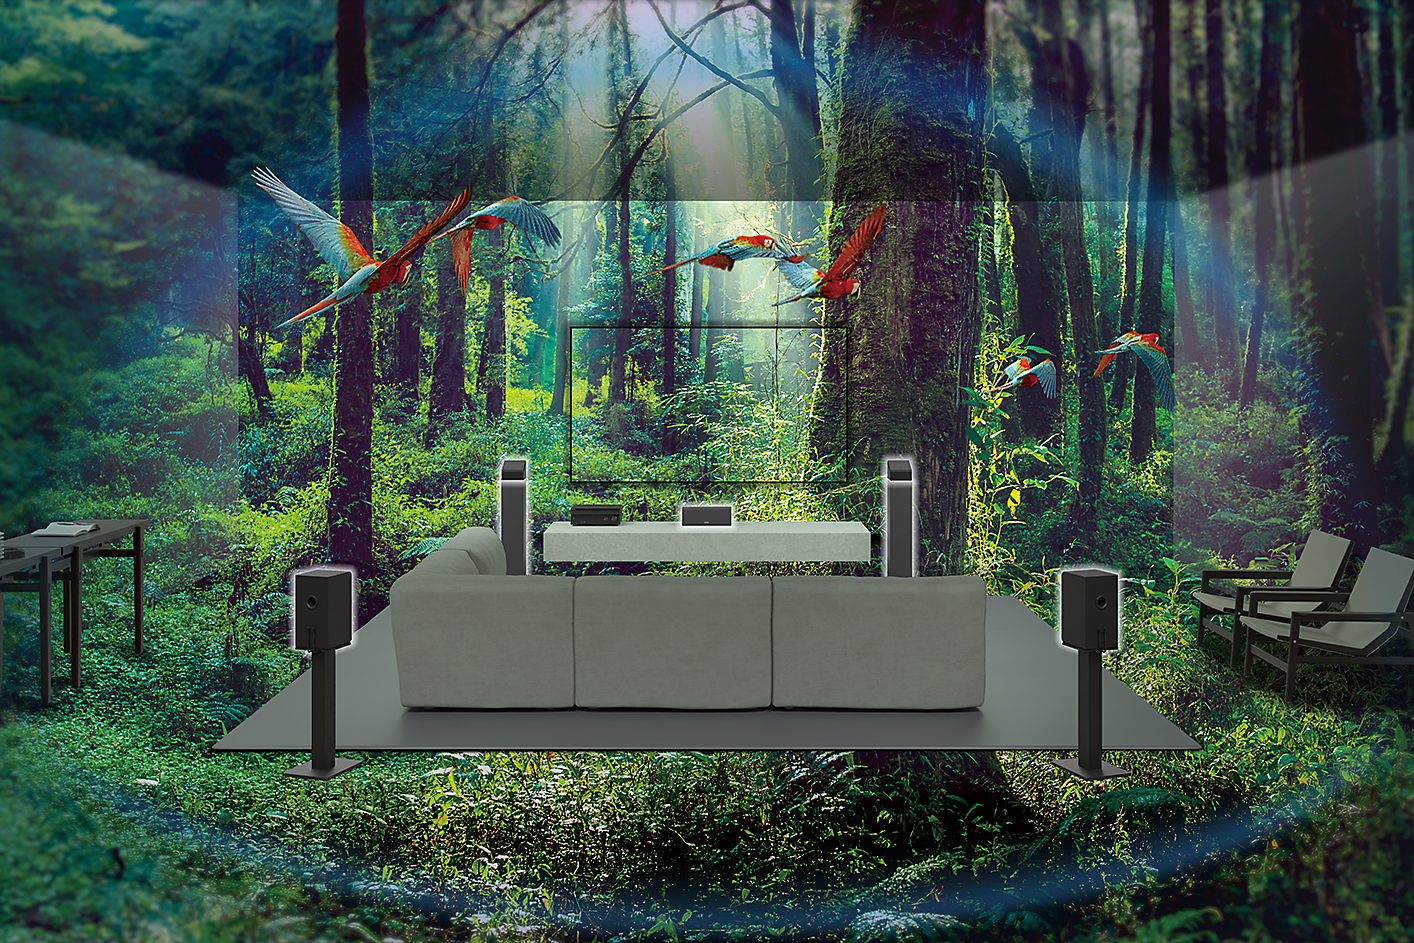 Slika kavča, televizorja in zvočnikov sredi gozda, kjer letijo papagaji